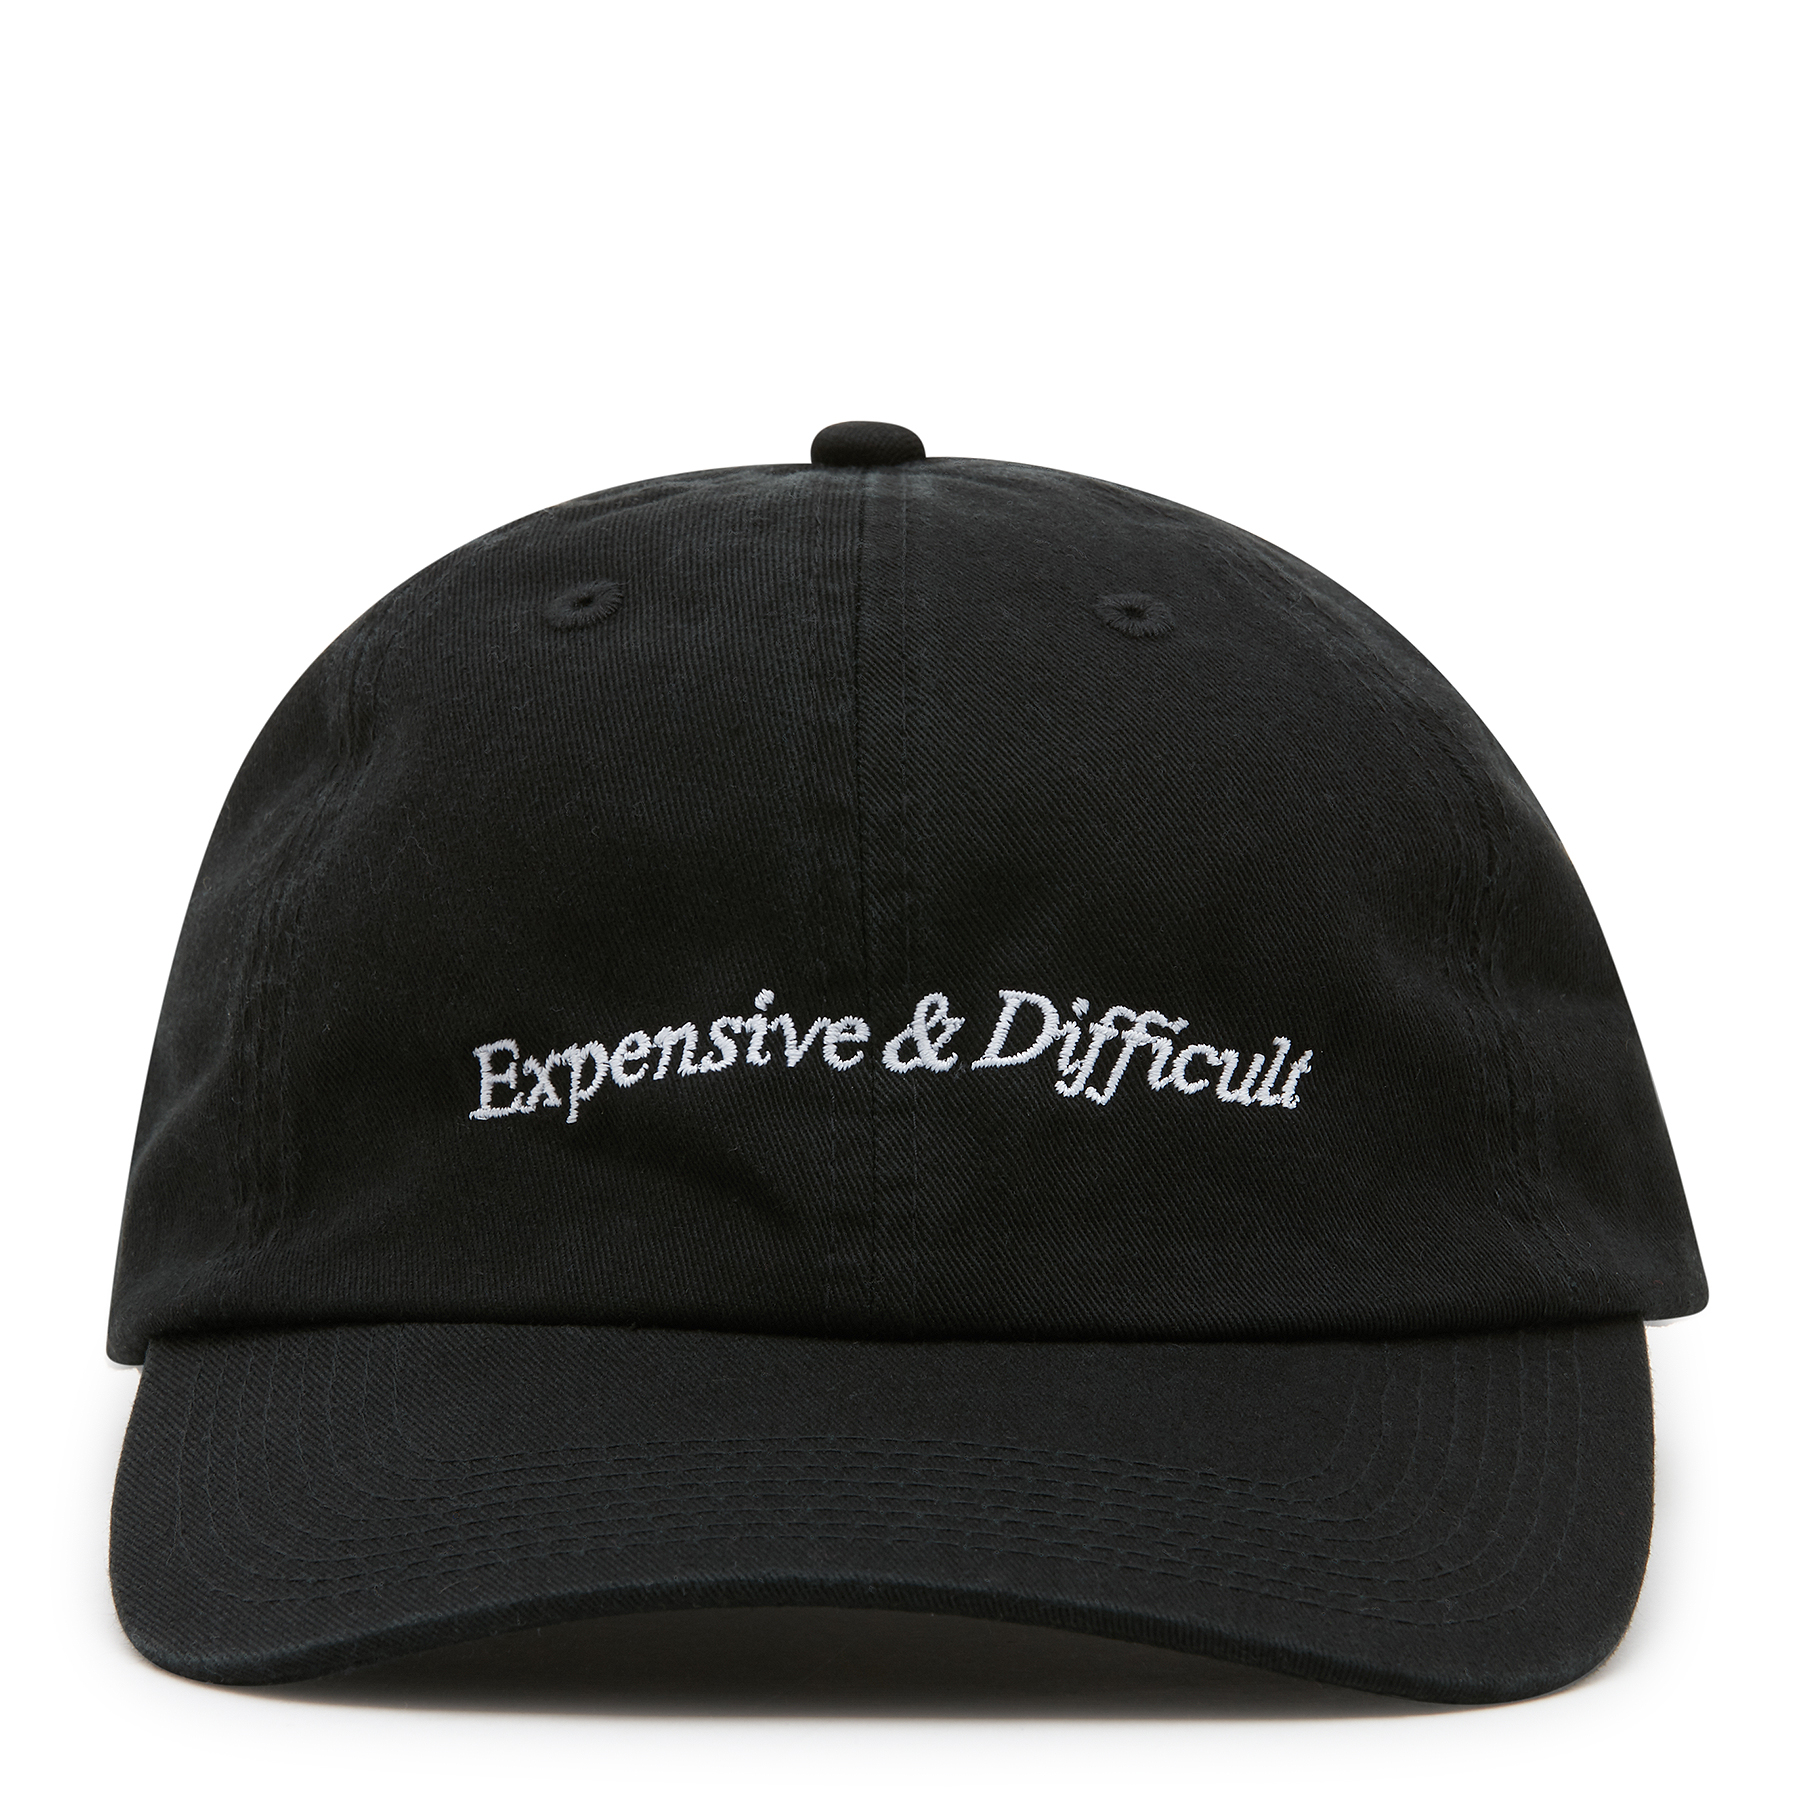 Expensive & Difficult cap